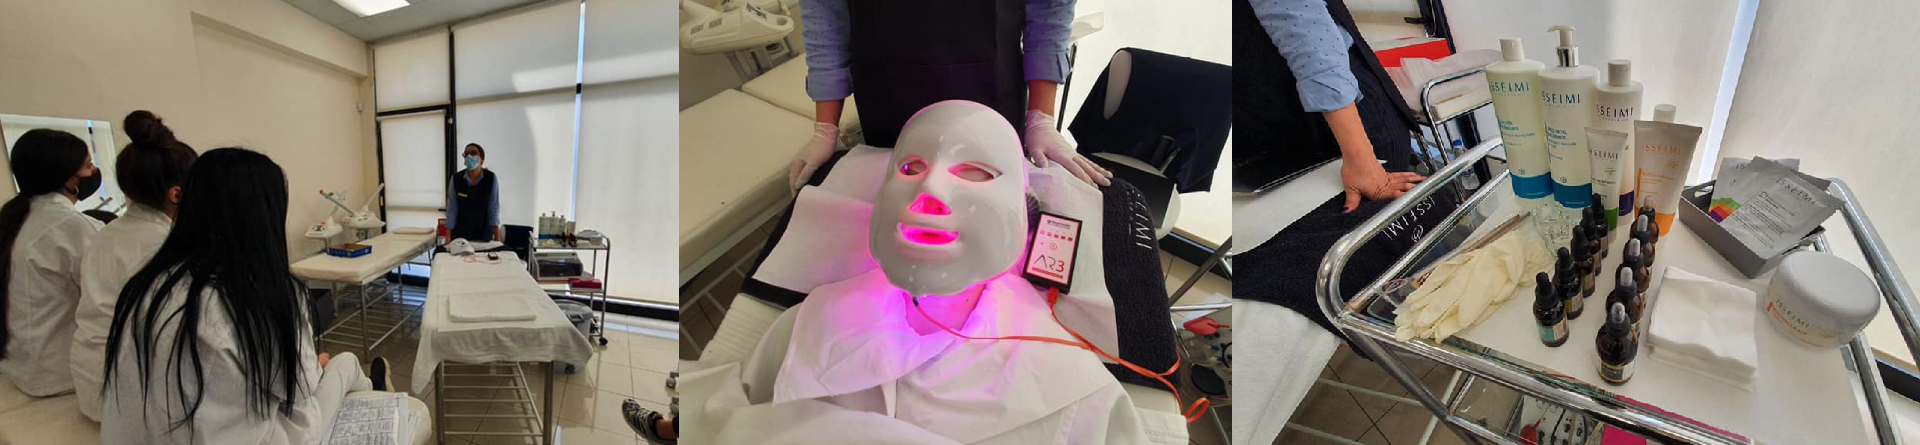 Παρουσίαση της LEDs Beauty Mask από την εταιρεία Kybella Beauty Ltd